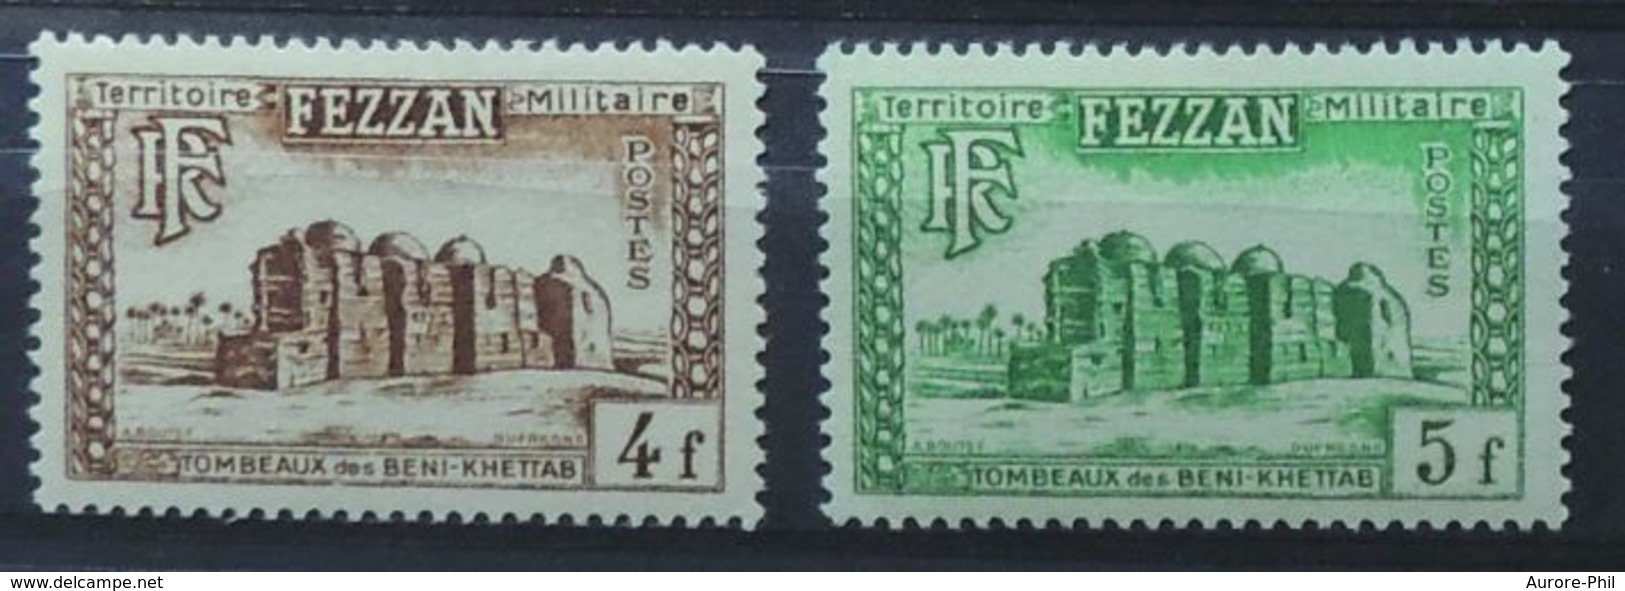 Fezzan Territoire Militaire Ex-colonie Français Les Tombeaux Des Beni-Khettab 1949 - Neufs